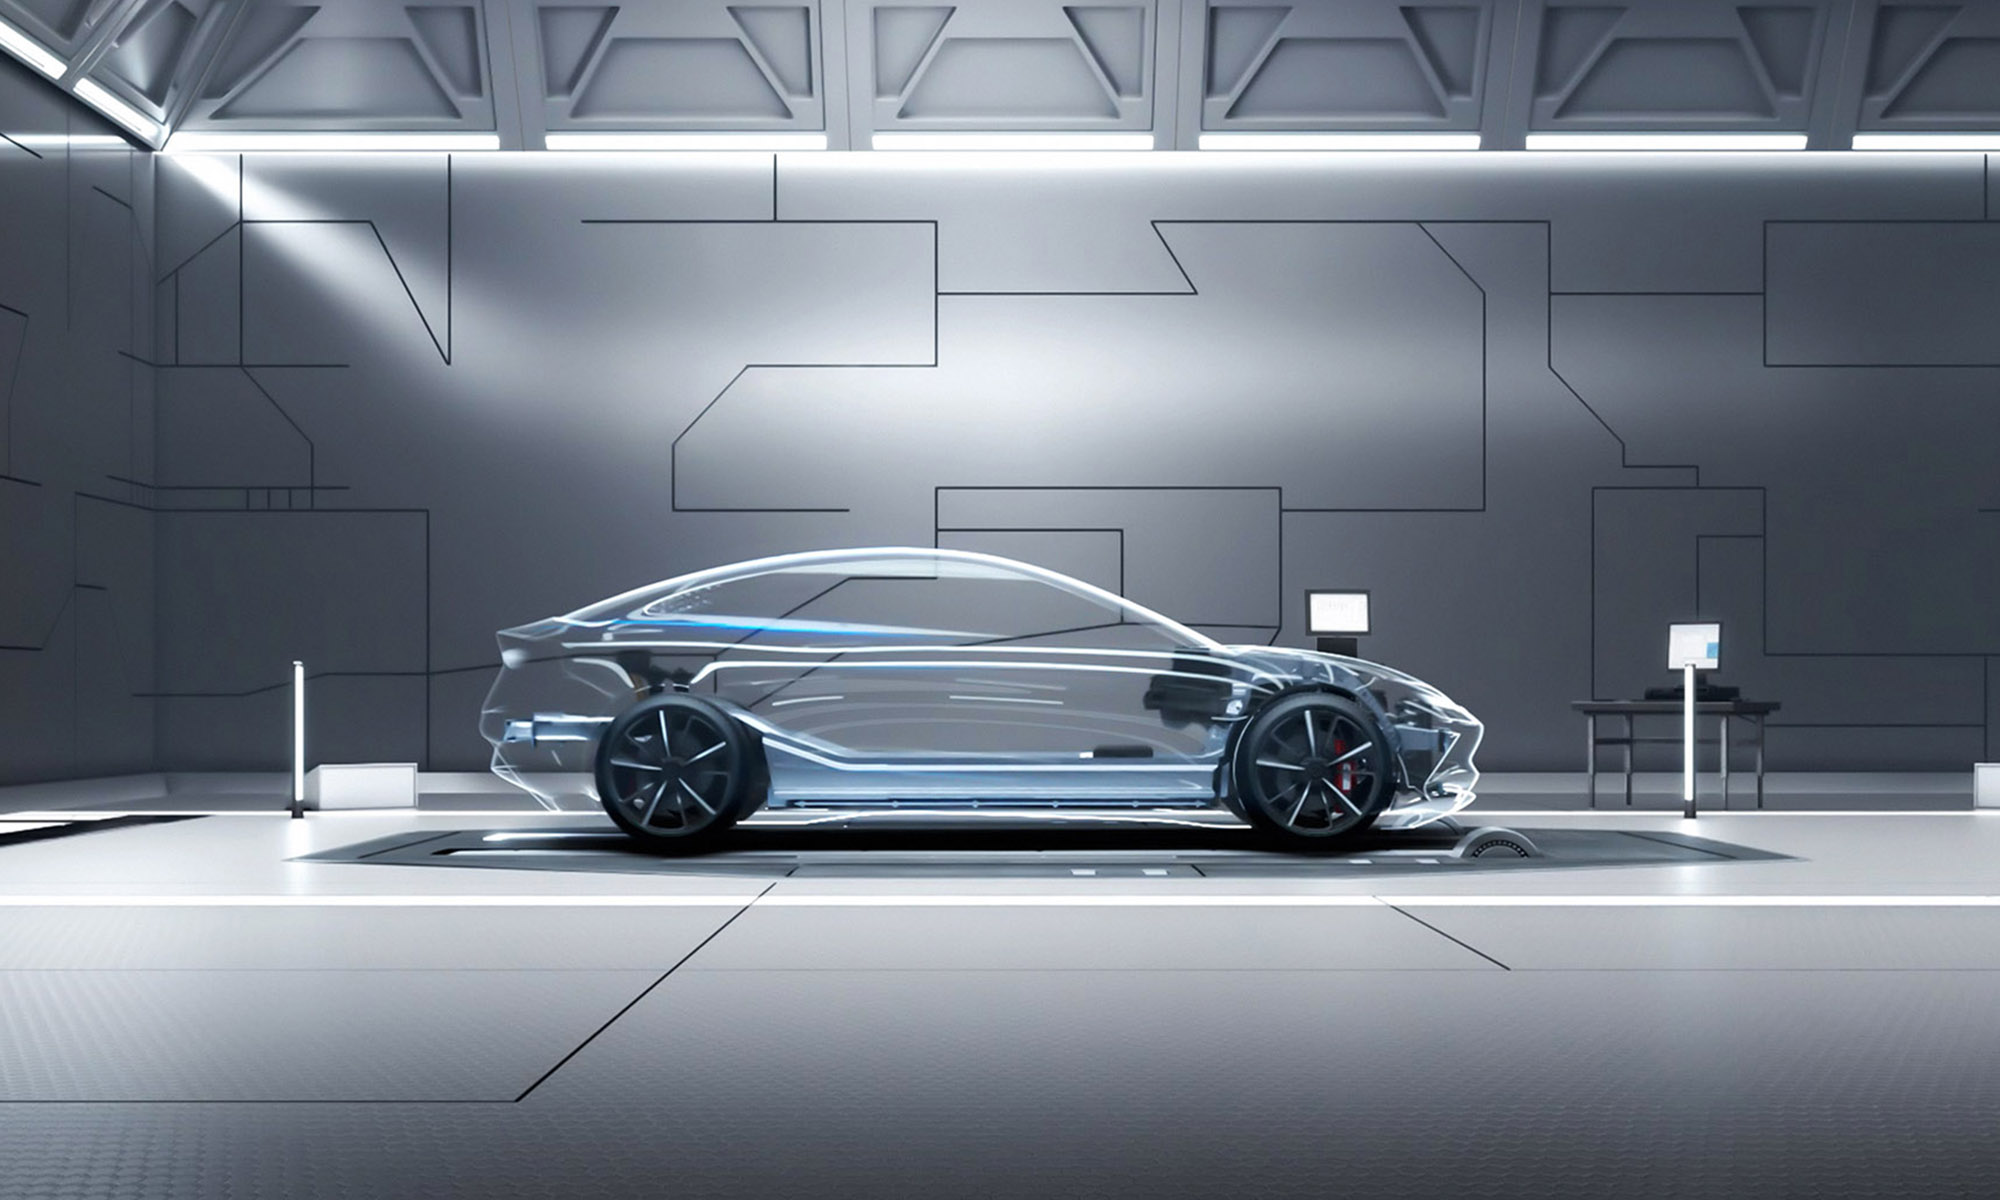 El nuevo avance de BYD promete mejoras significativas para sus coches eléctricos e híbridos enchufables.